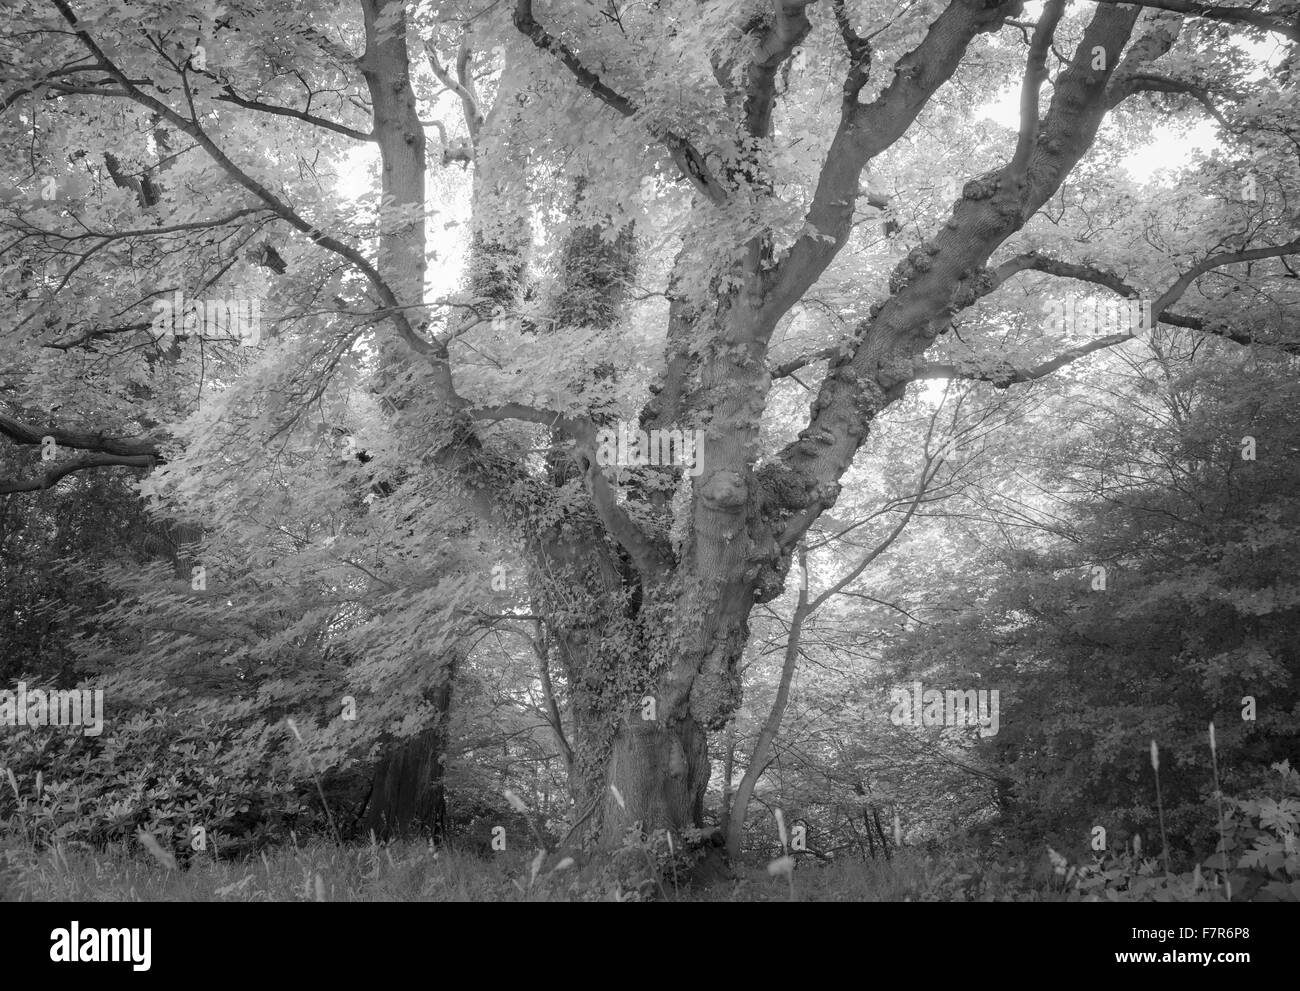 Un antico albero nella motivazione del Gibside, Tyne & Wear. Gibside è stato creato da uno degli uomini più ricchi in Georgian England, e offre viste fantastiche, ampi spazi aperti, affascinanti edifici storici e rovine. Foto Stock